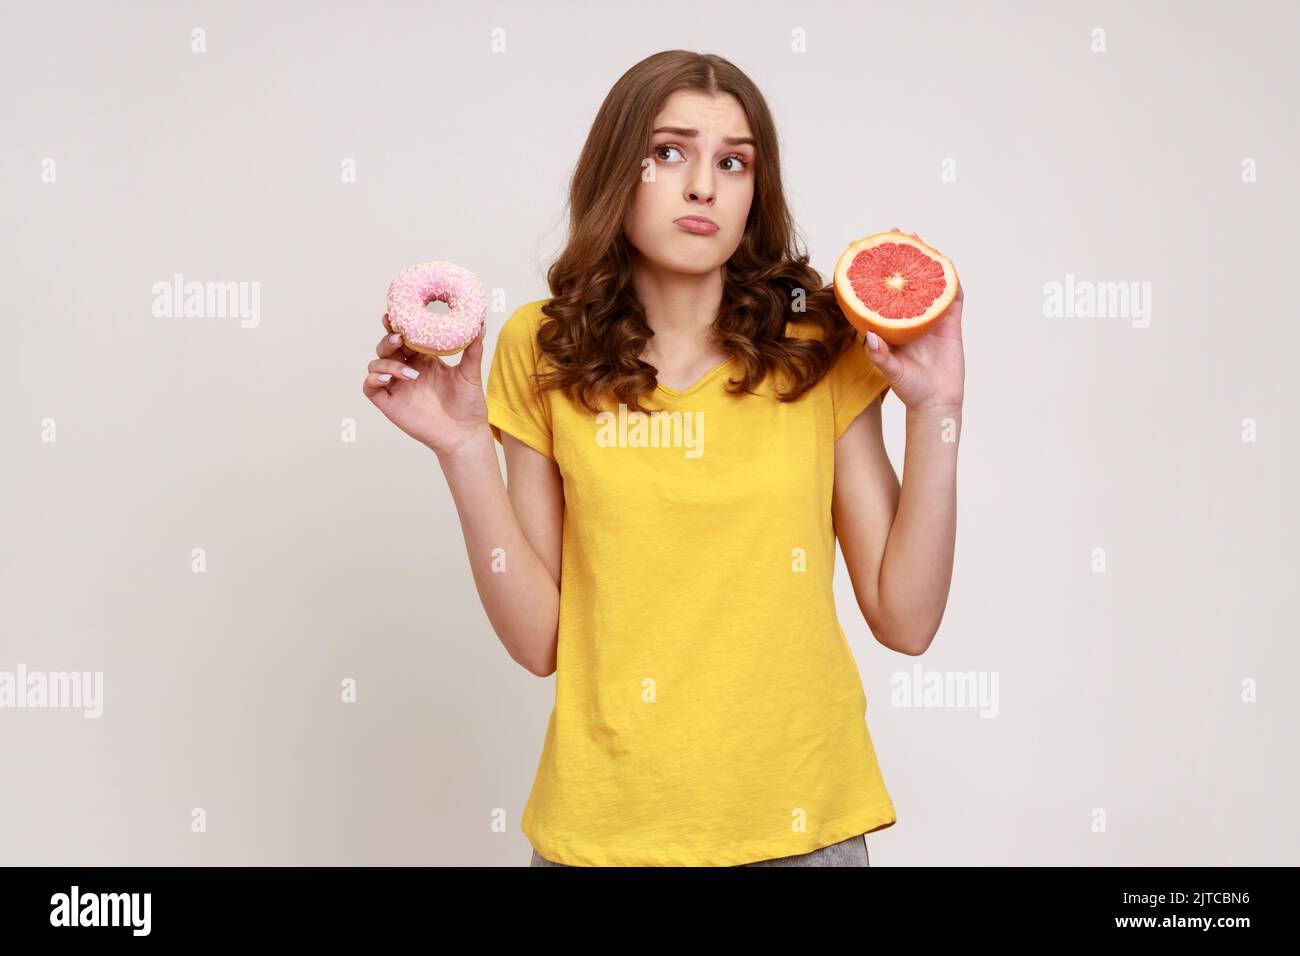 Gesunde Früchte im Vergleich zu kalorienreicher Nachspeise. Porträt eines verwirrten, lockigen Teenagers im lässigen T-Shirt, das zwischen Grapefruit und Donut wählen kann. Innenaufnahme des Studios isoliert auf grauem Hintergrund. Stockfoto